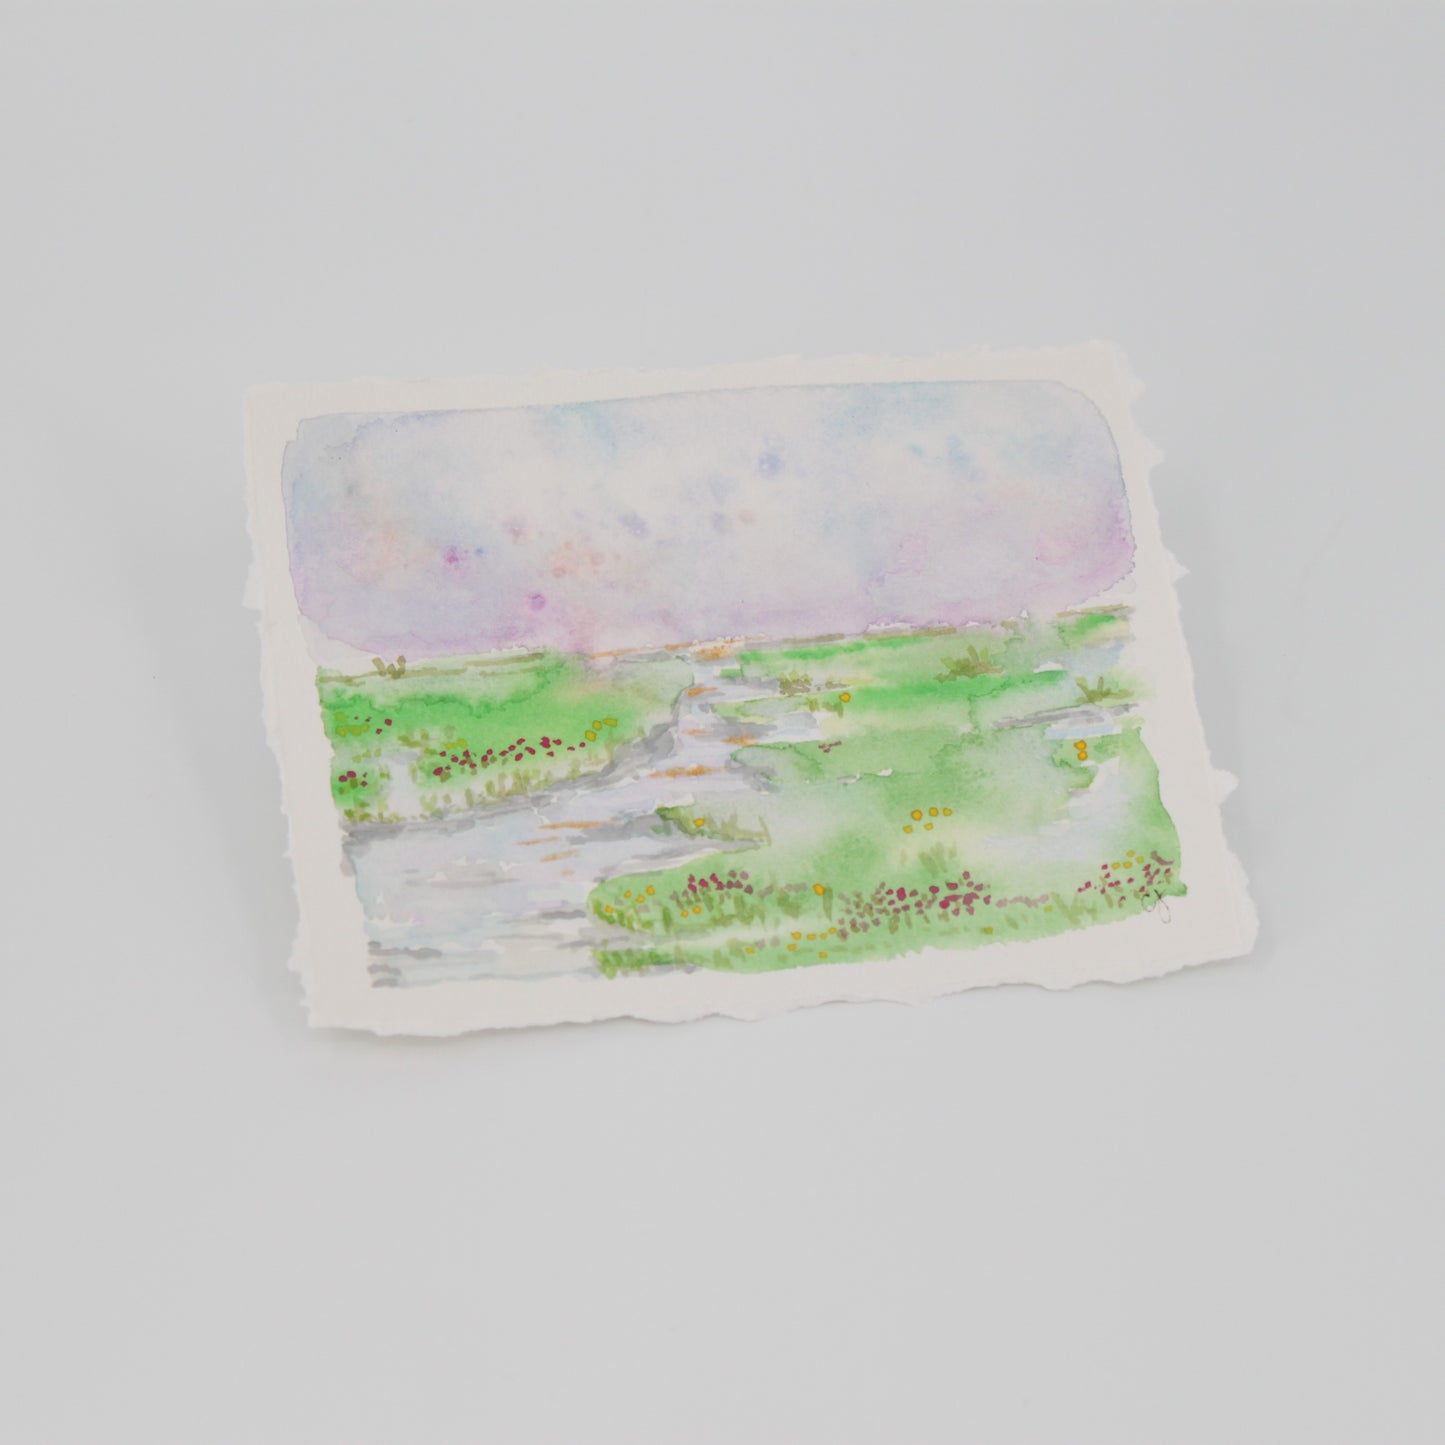 Watercolor Landscape on Paper